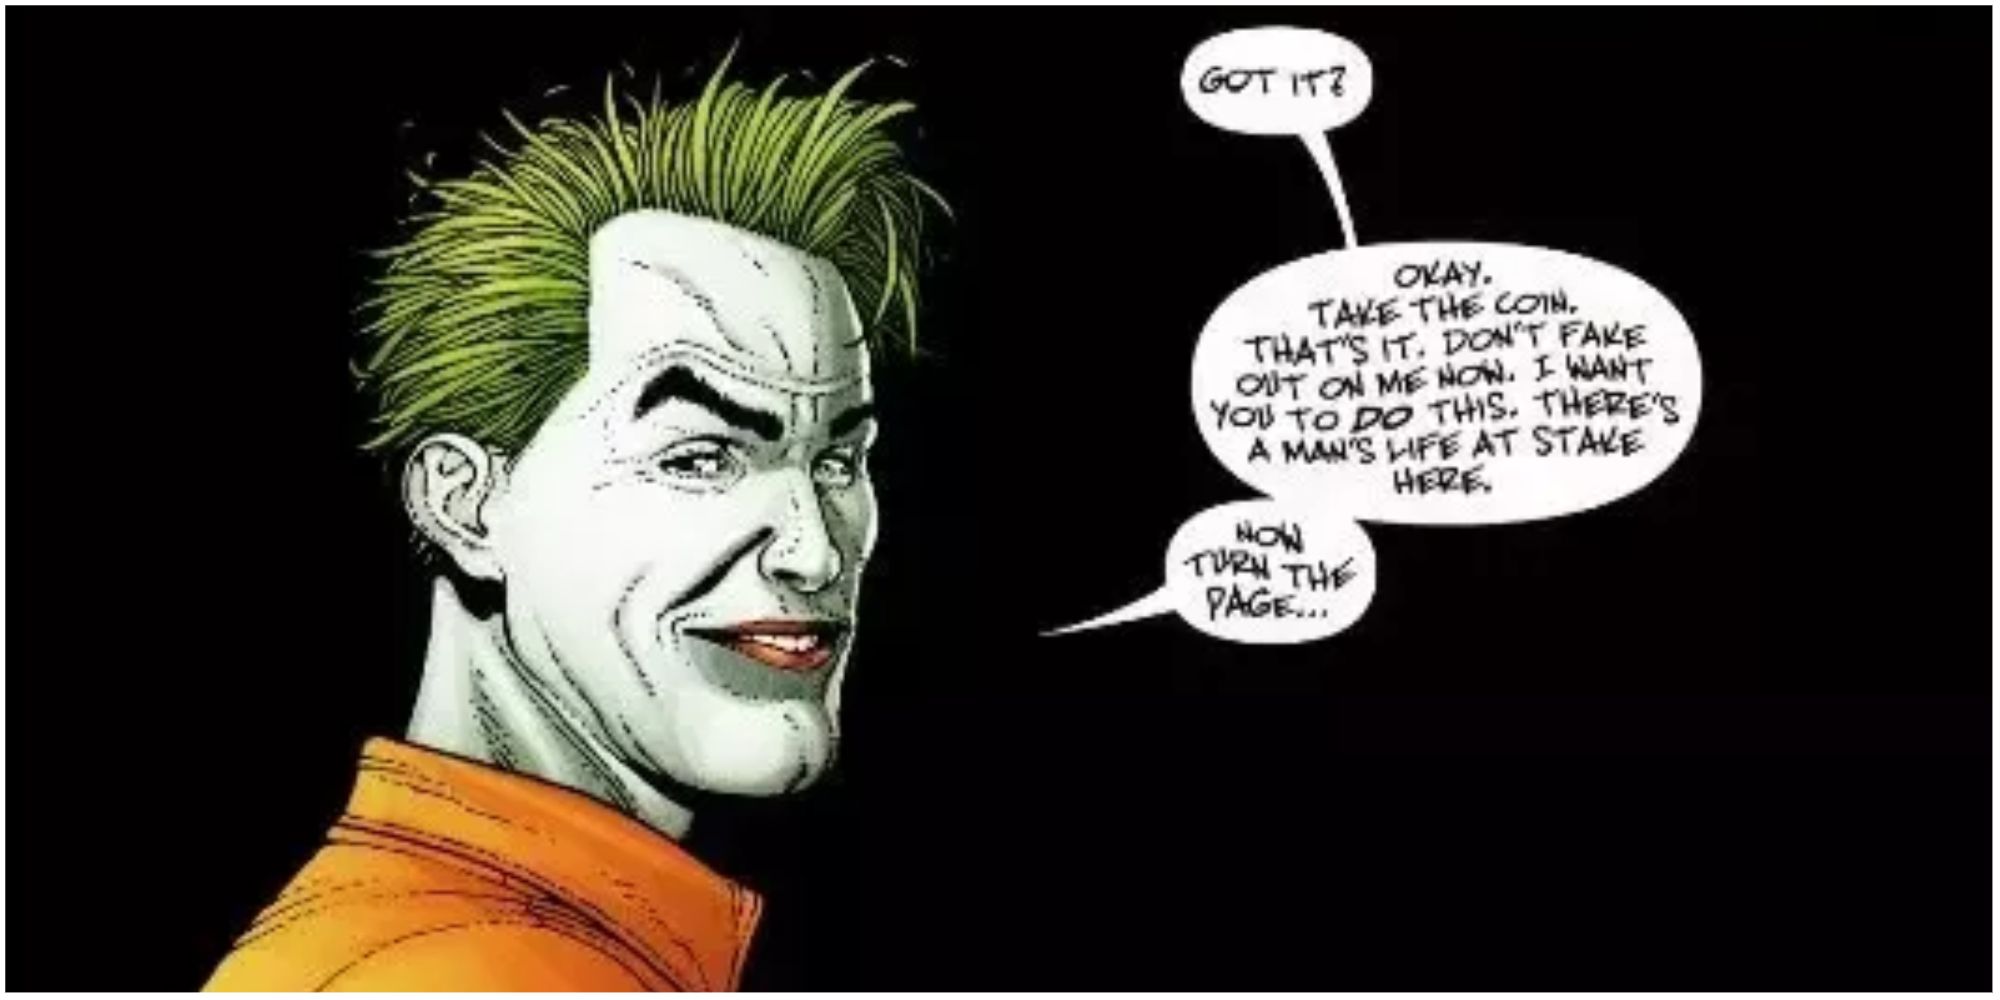 The Joker breaks the fourth wall in Superman - Emperor Joker